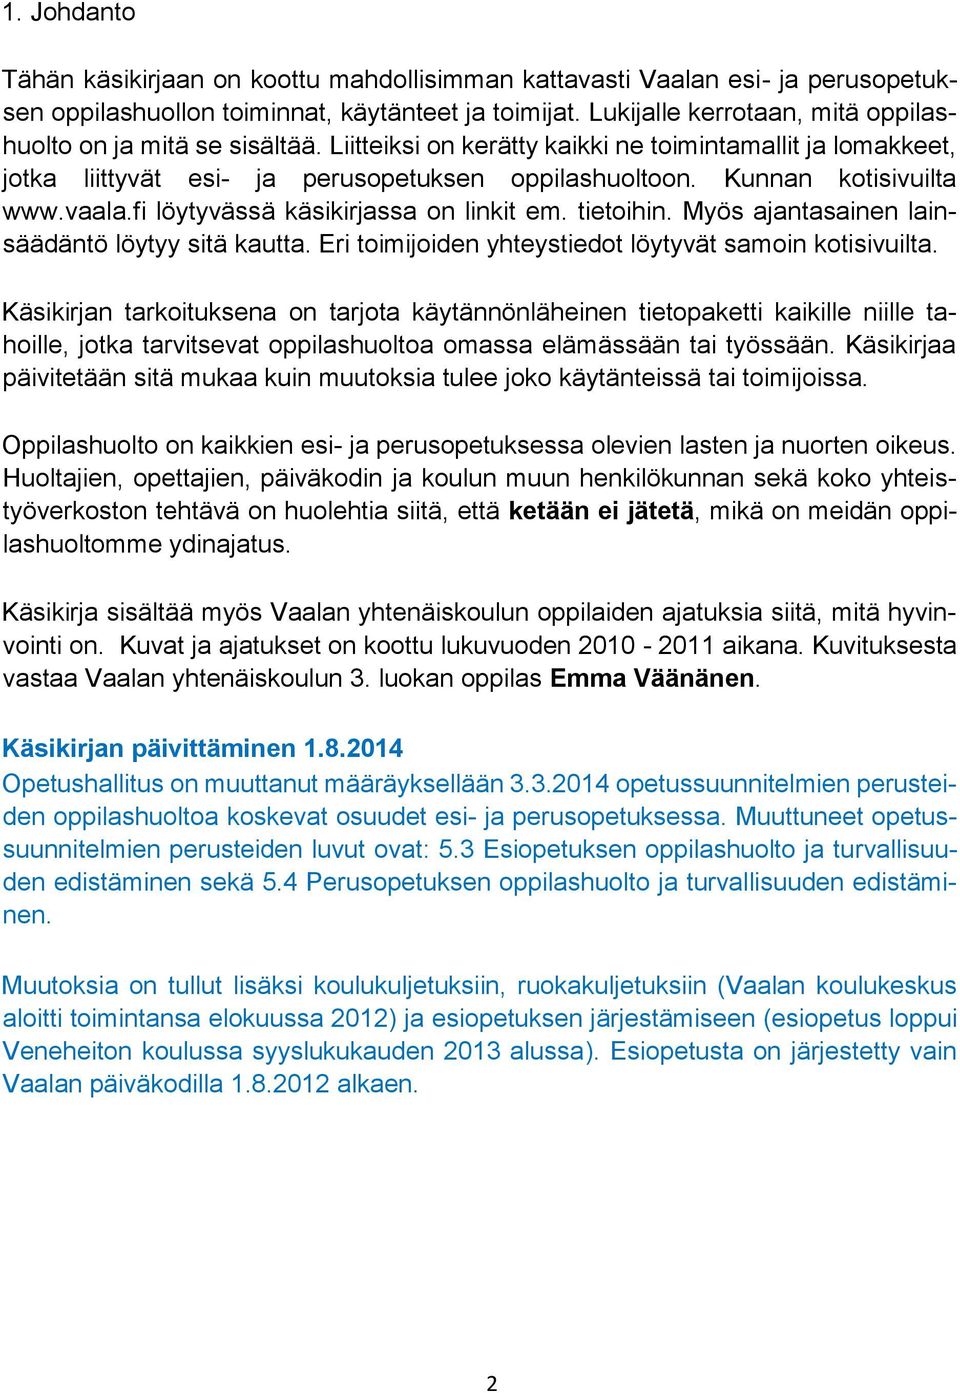 Kunnan kotisivuilta www.vaala.fi löytyvässä käsikirjassa on linkit em. tietoihin. Myös ajantasainen lainsäädäntö löytyy sitä kautta. Eri toimijoiden yhteystiedot löytyvät samoin kotisivuilta.